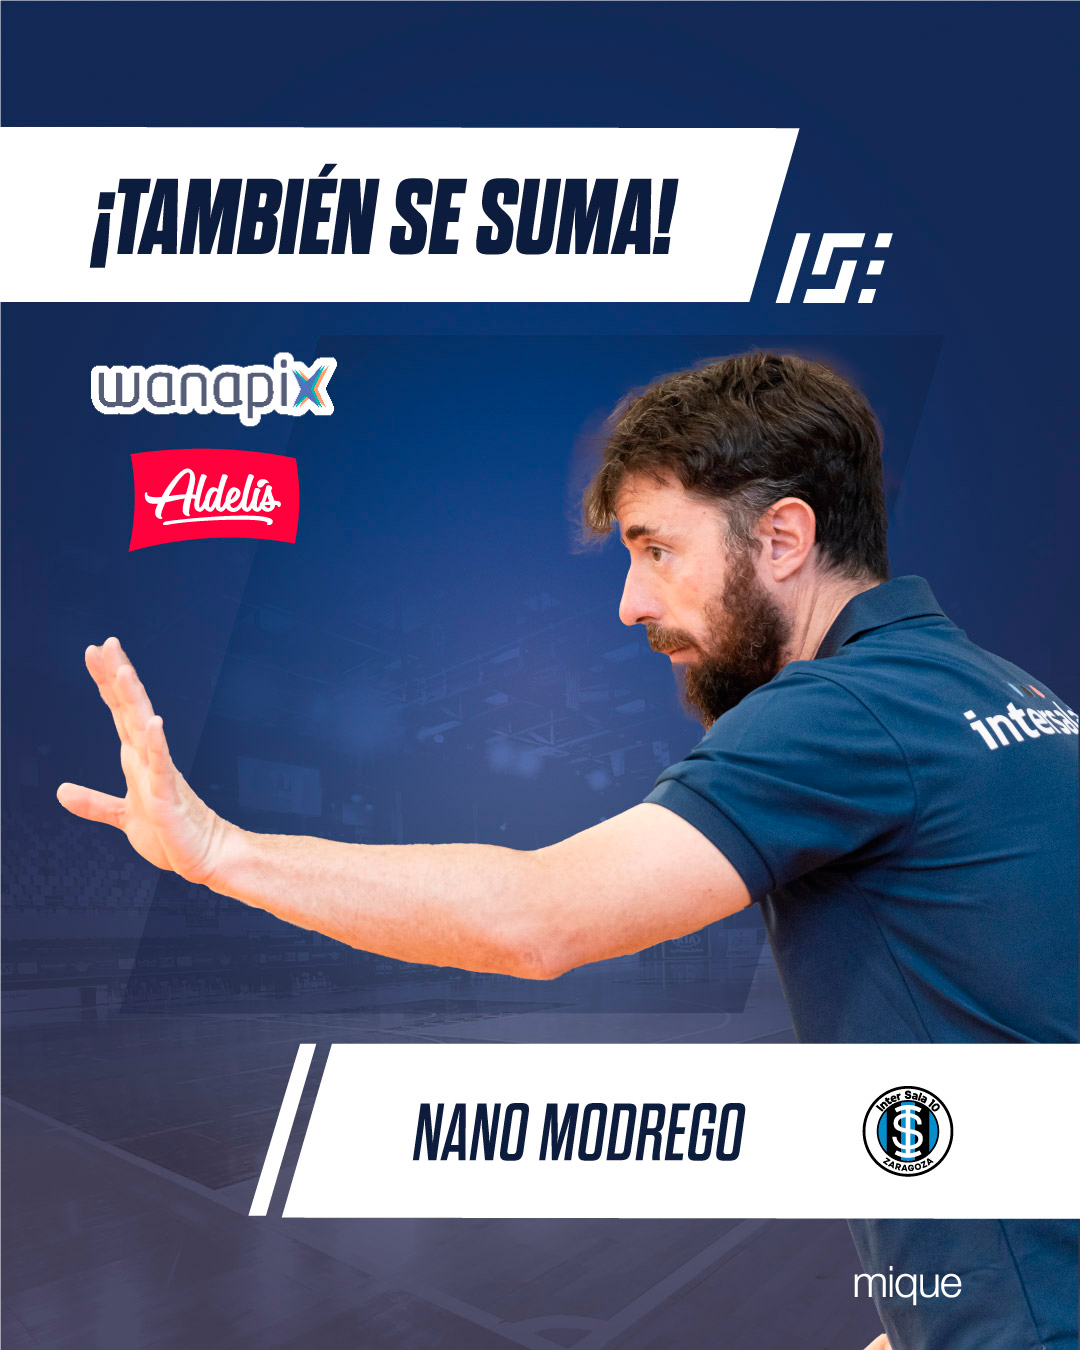 Nano Modrego seguirá al frente de Wanapix Aldelís InterSala 10 Zaragoza